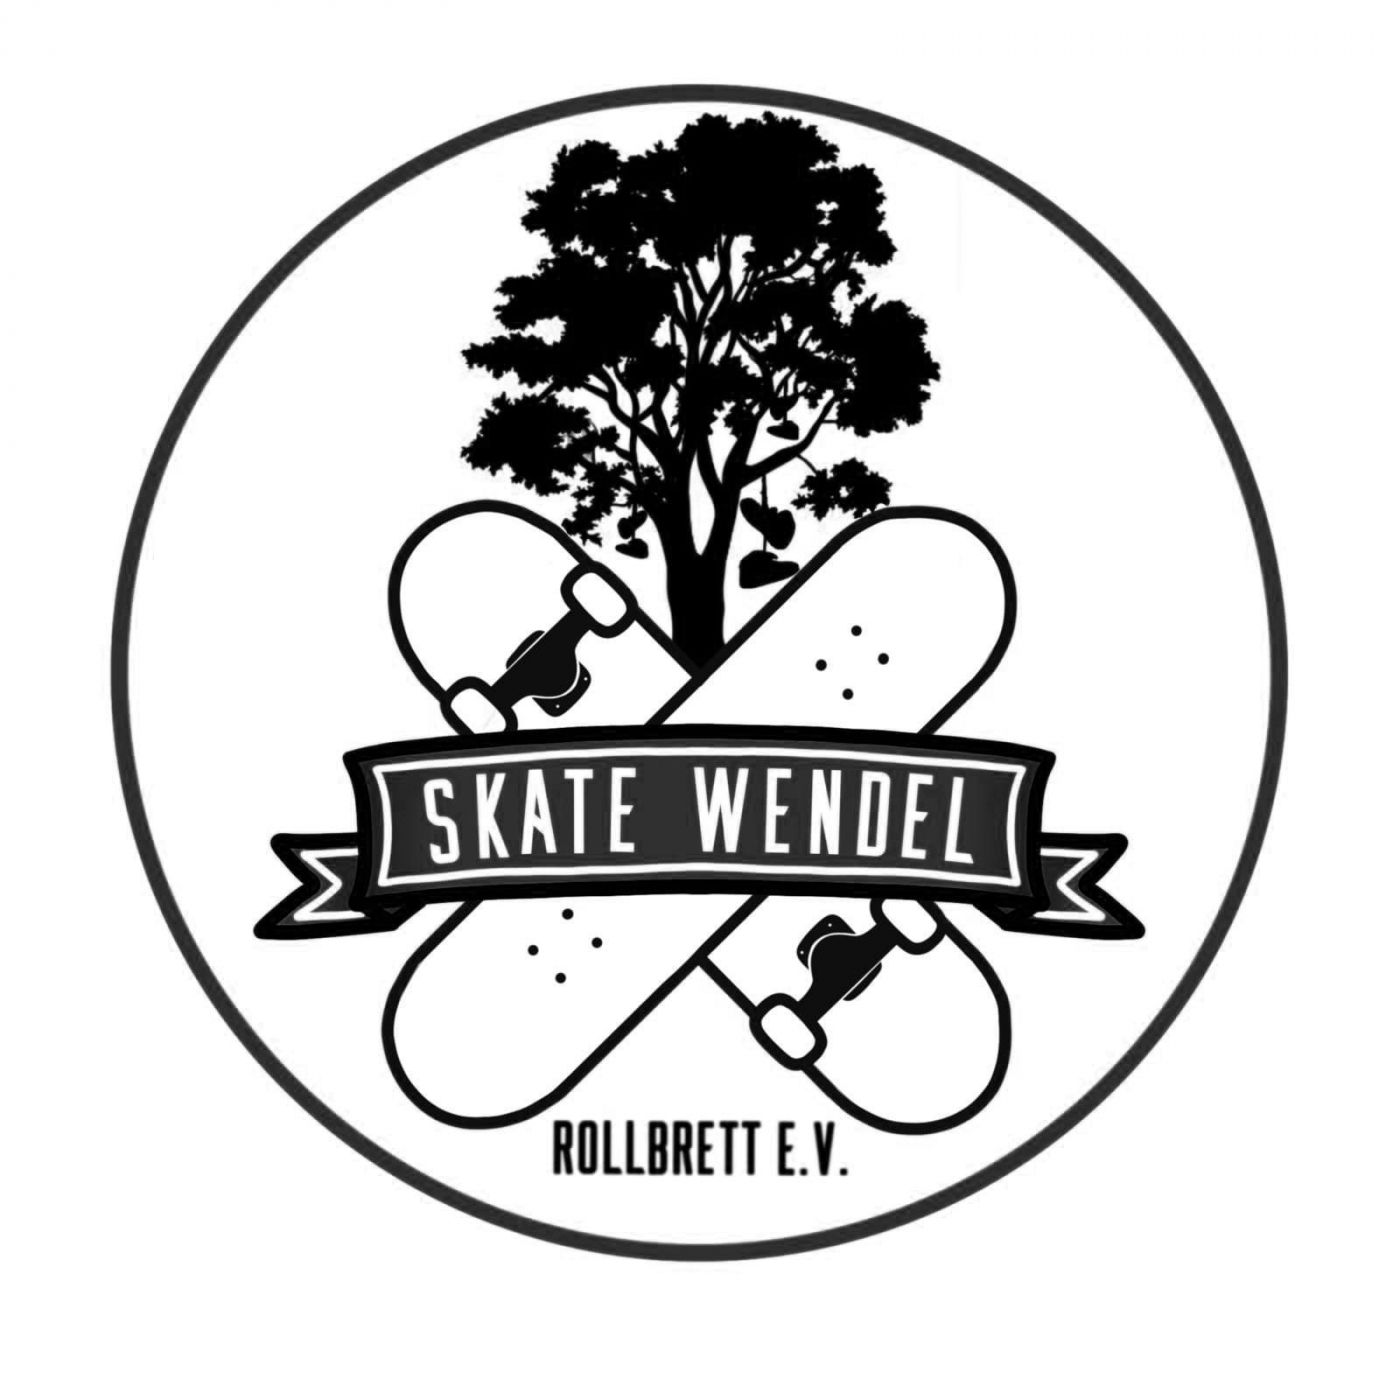 Profilbild des Vereins Skate Wendel Rollbrett e. V